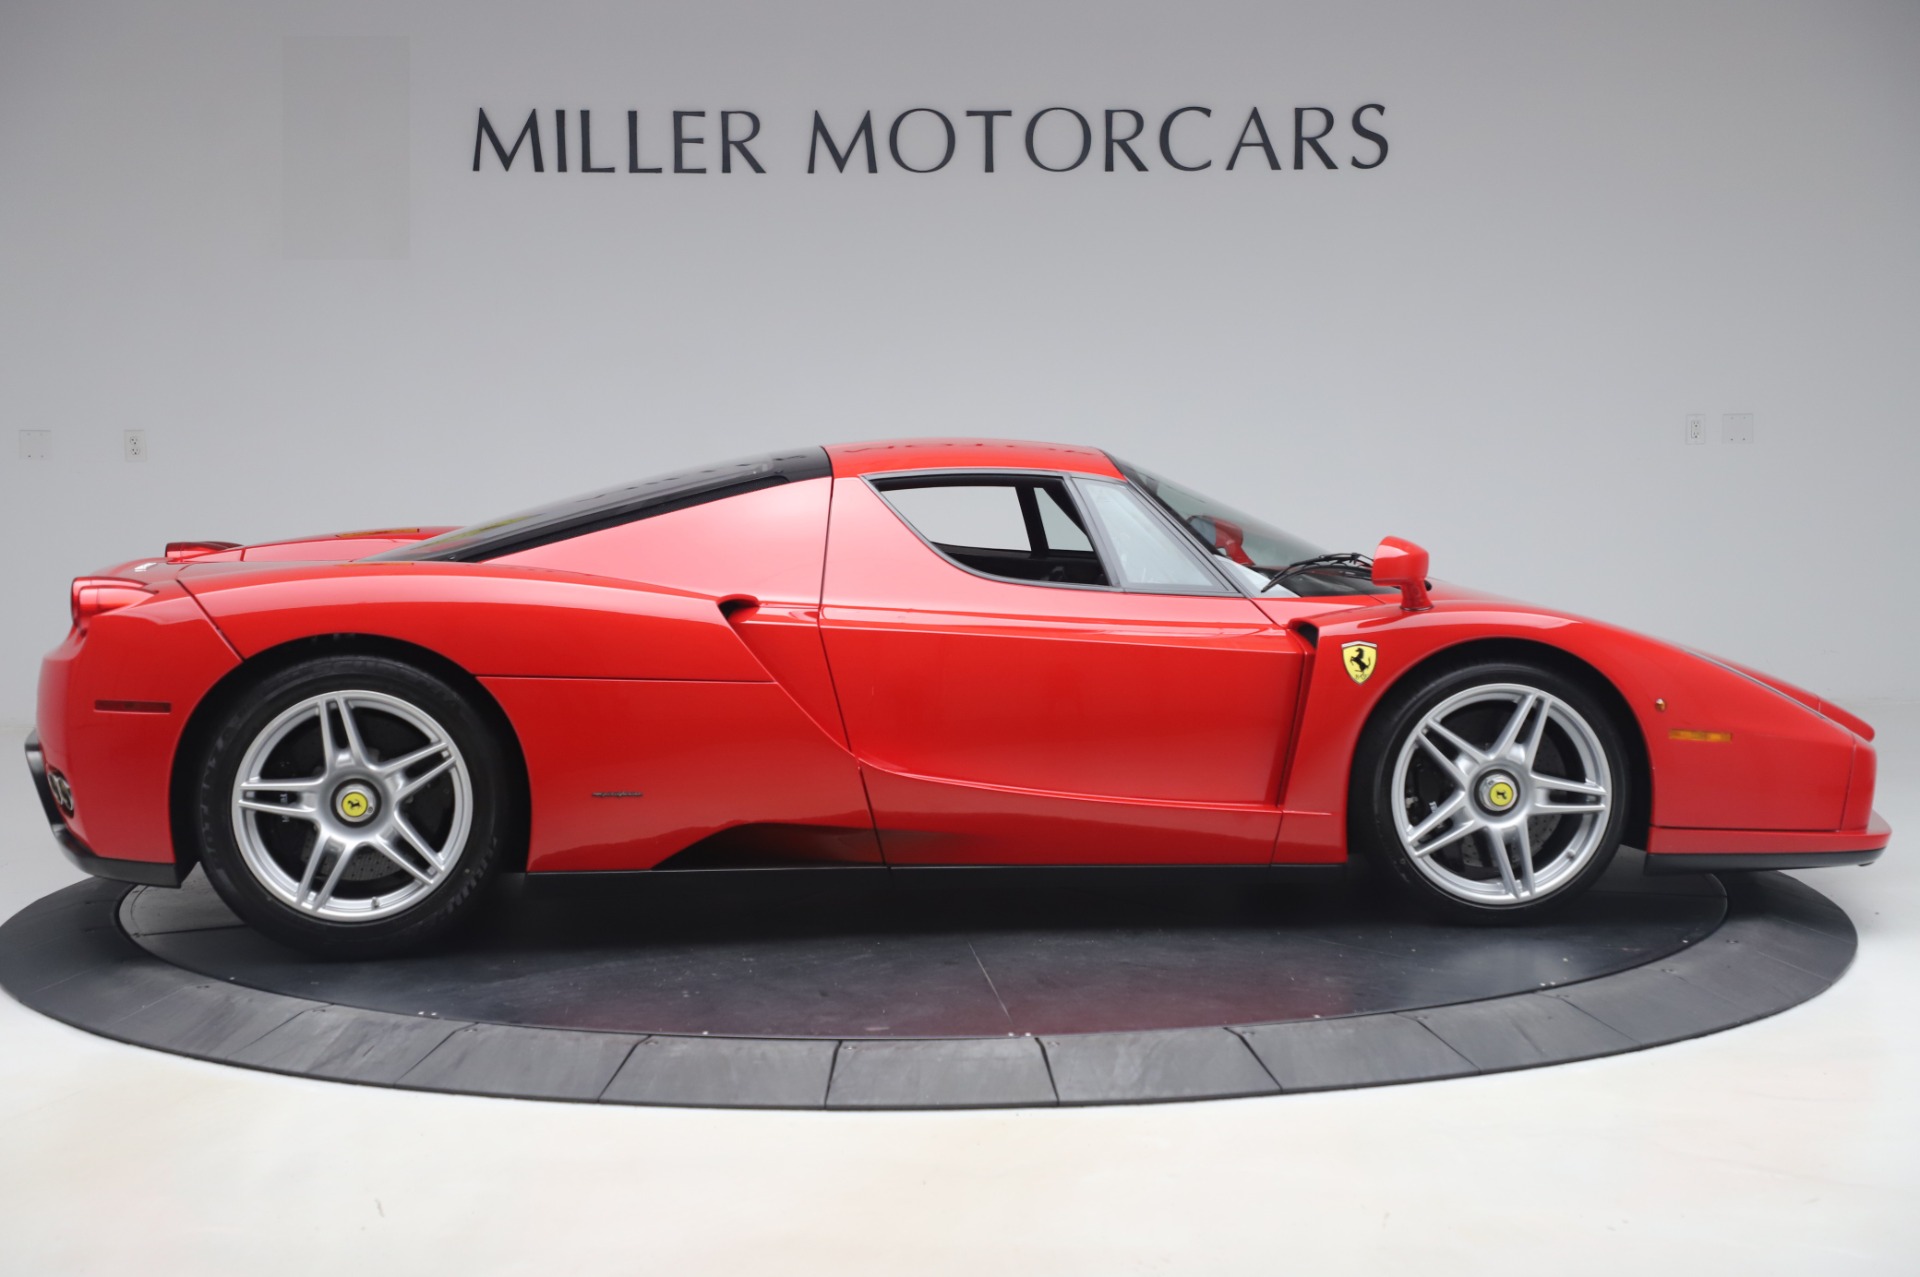 Pre Owned 2003 Ferrari Enzo For Sale Miller Motorcars Stock 4693c